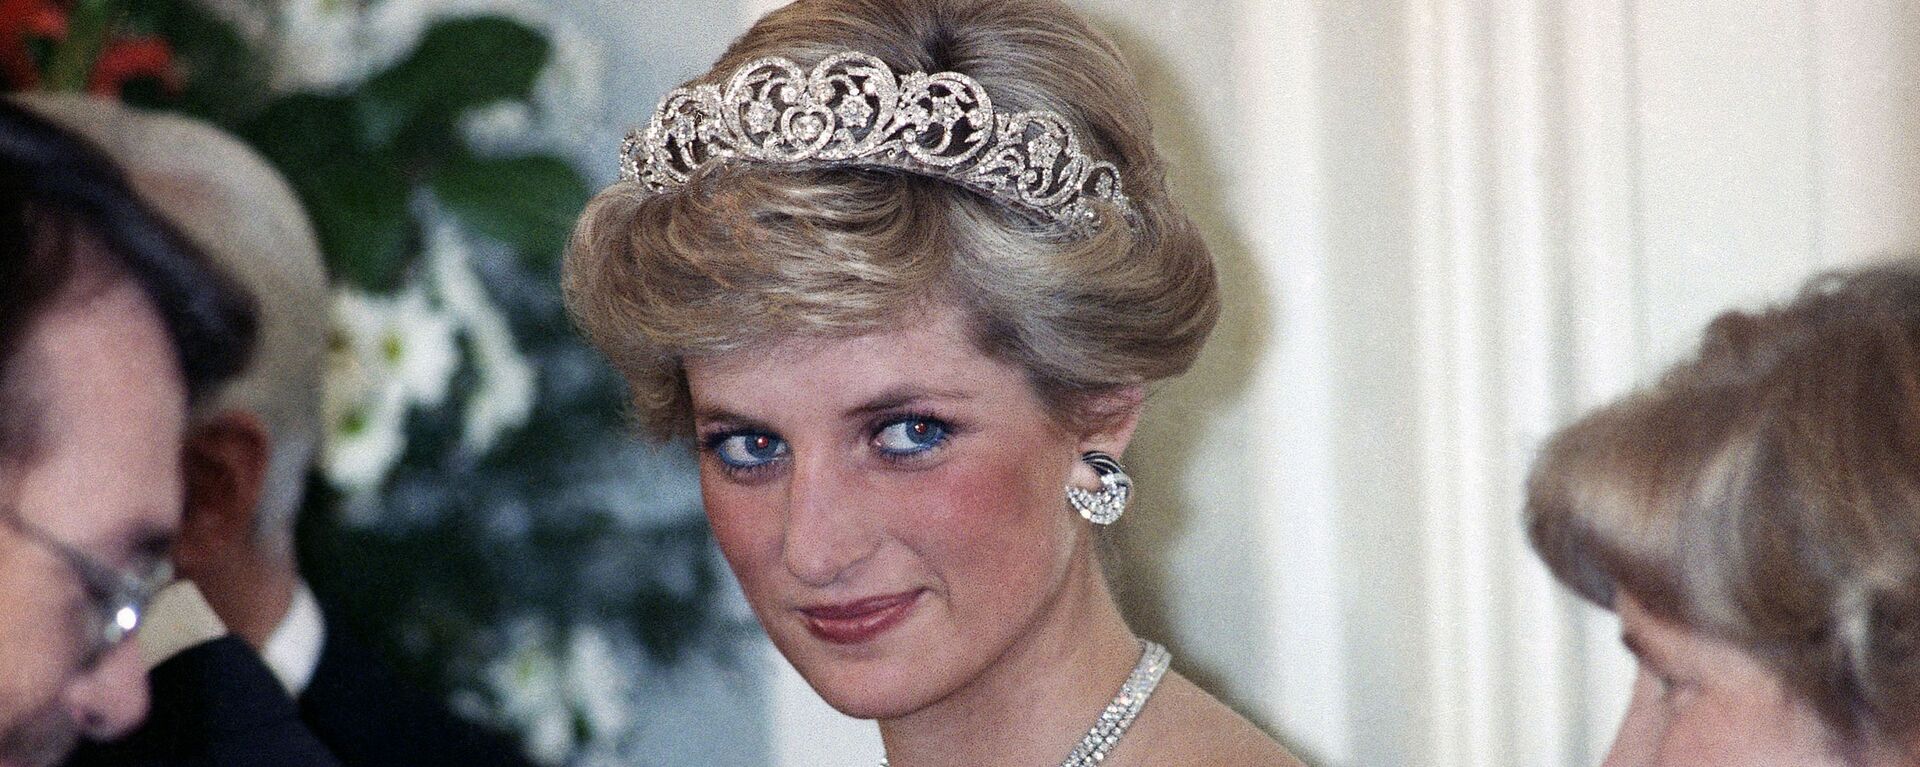 Prenses Diana, Bonn'da Batı Almanya Cumhurbaşkanı Richard von Weizsacker tarafından Britanya kraliyet ailesinin şerefine verilen akşam şöleninde. 1987. - Sputnik Türkiye, 1920, 24.05.2021